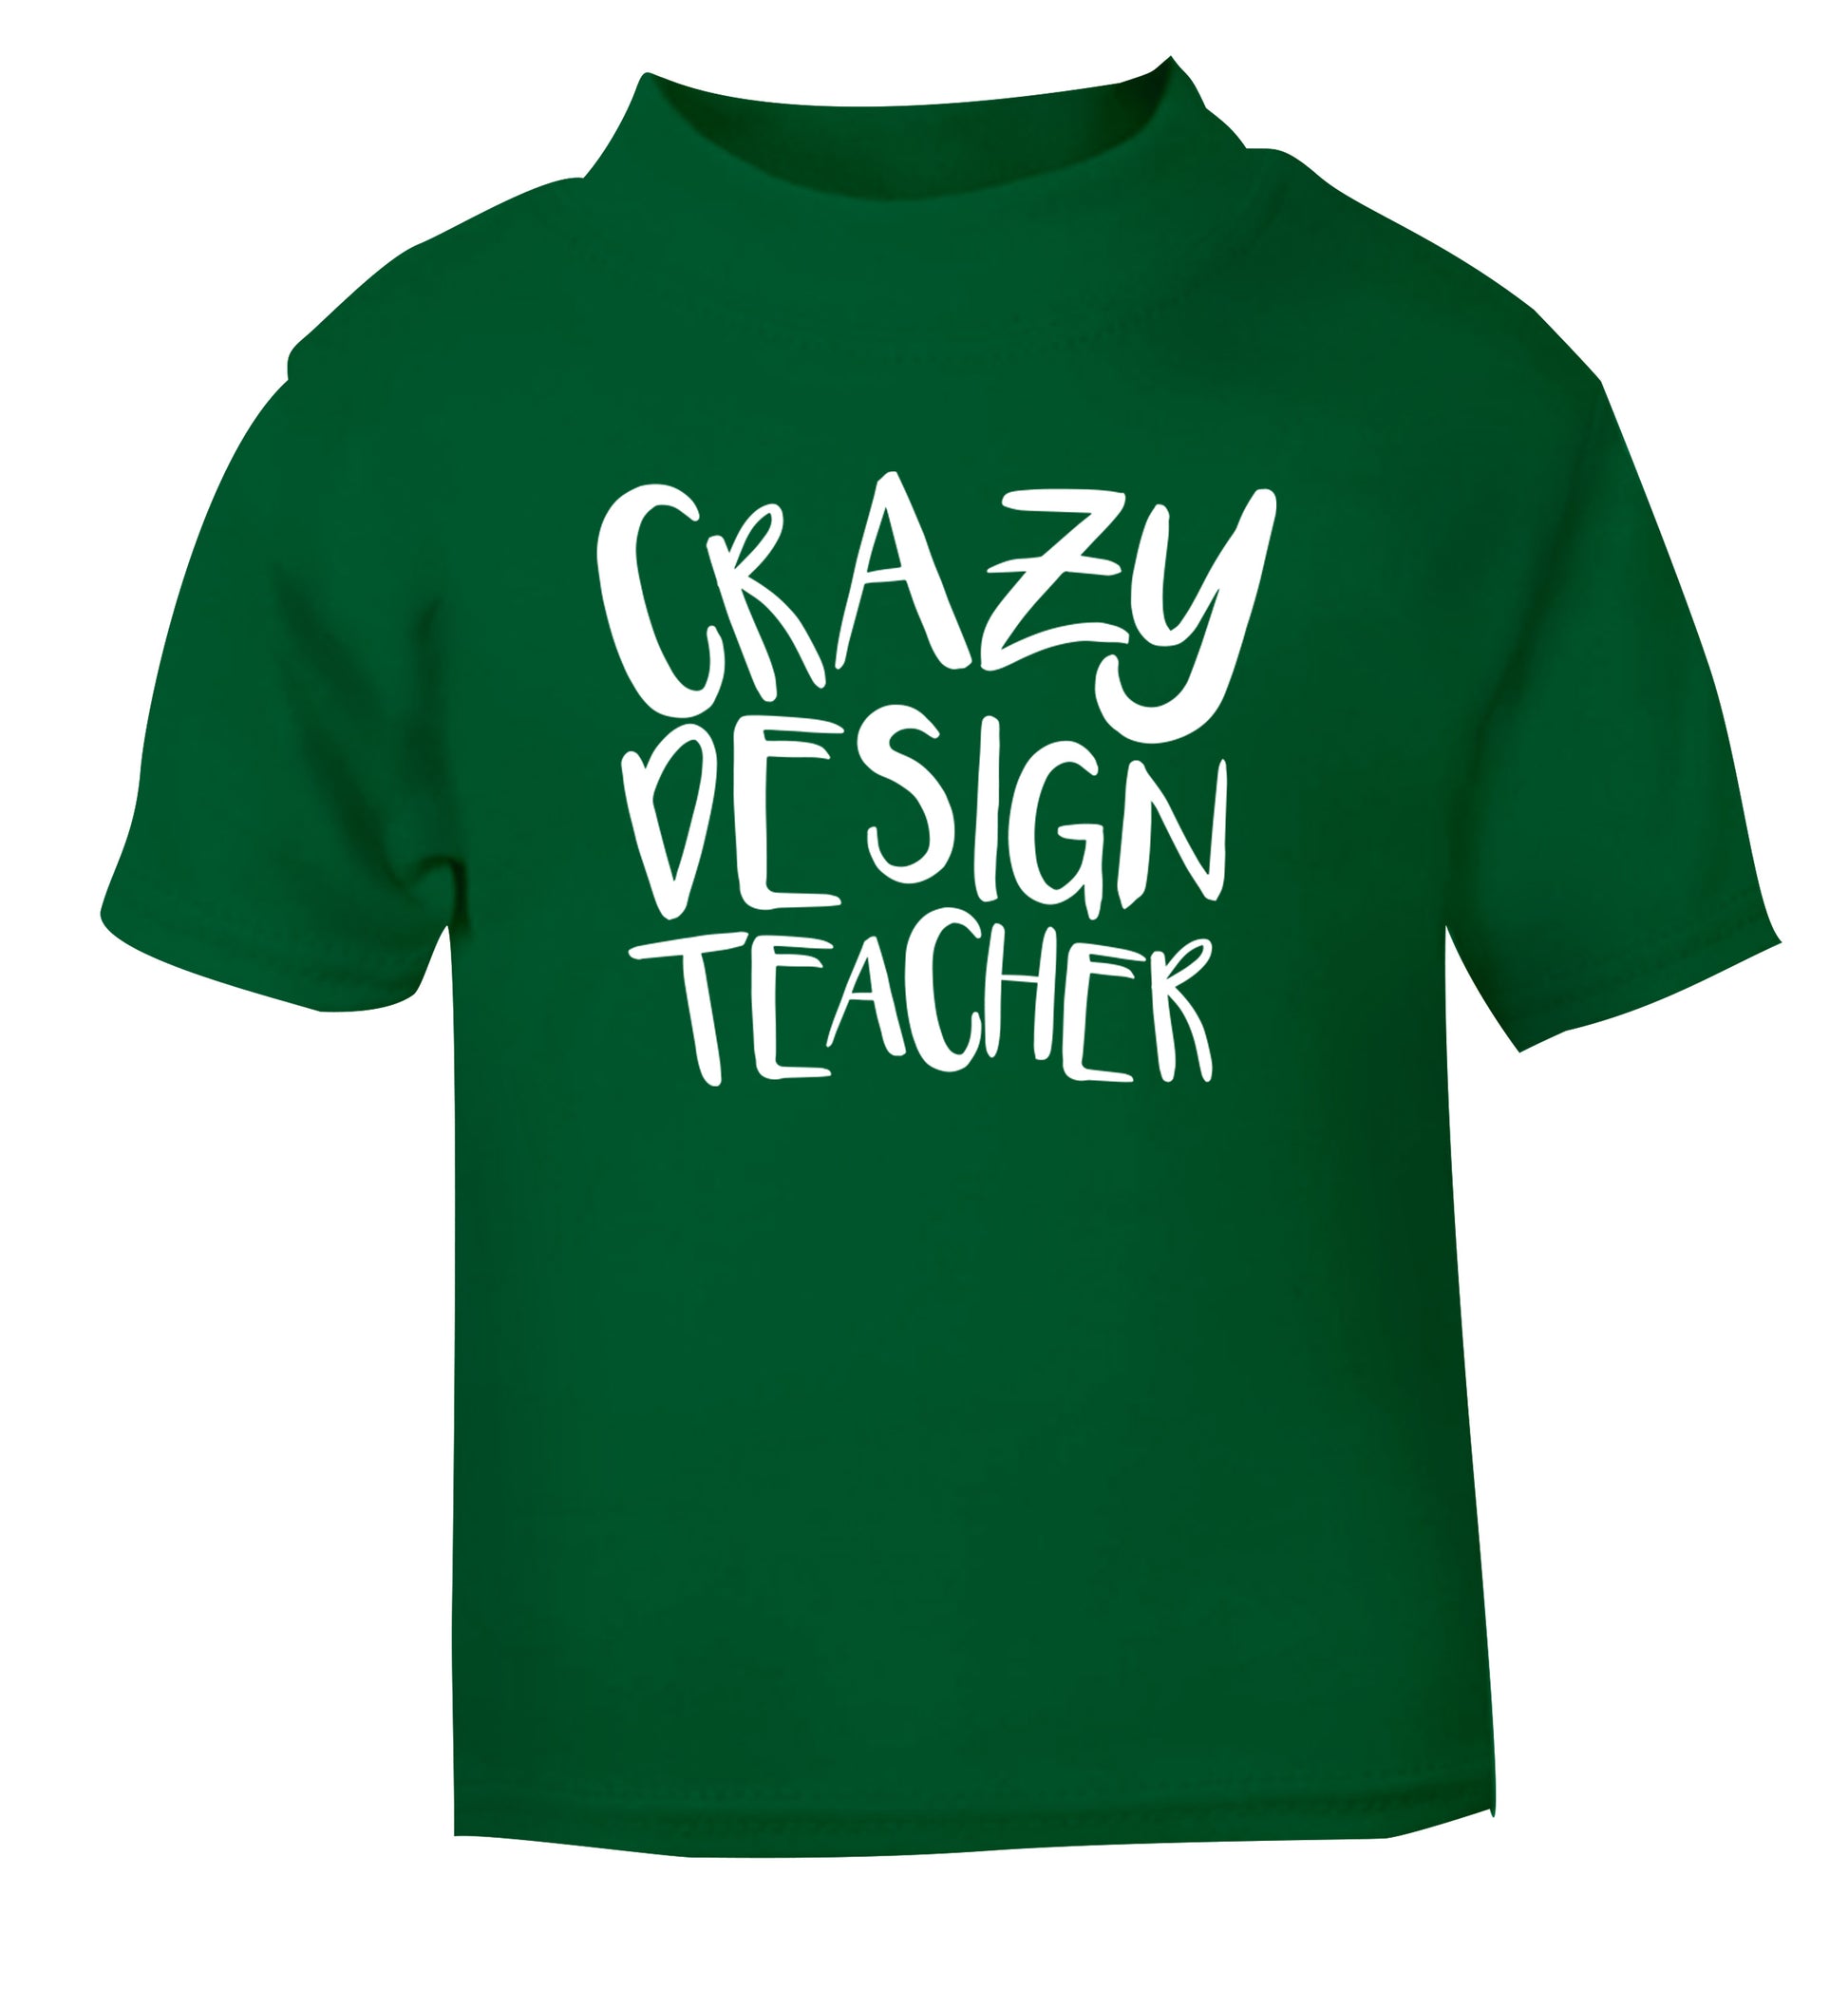 Crazy design teacher green Baby Toddler Tshirt 2 Years